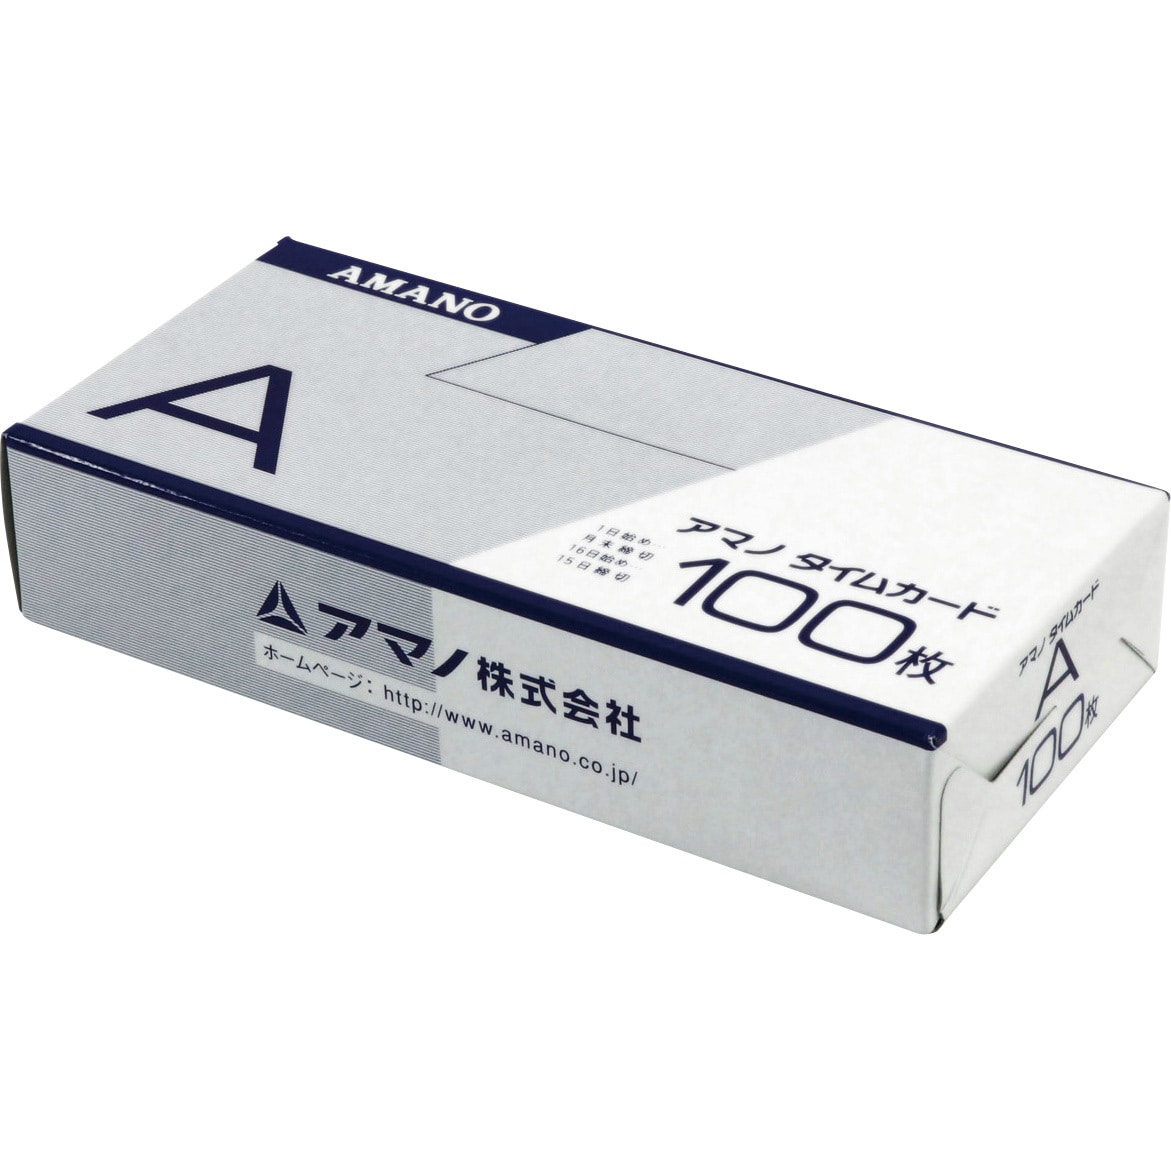 発売モデル AMANO アマノ タイムカード 標準Aカード 月末 31日 15日締め用